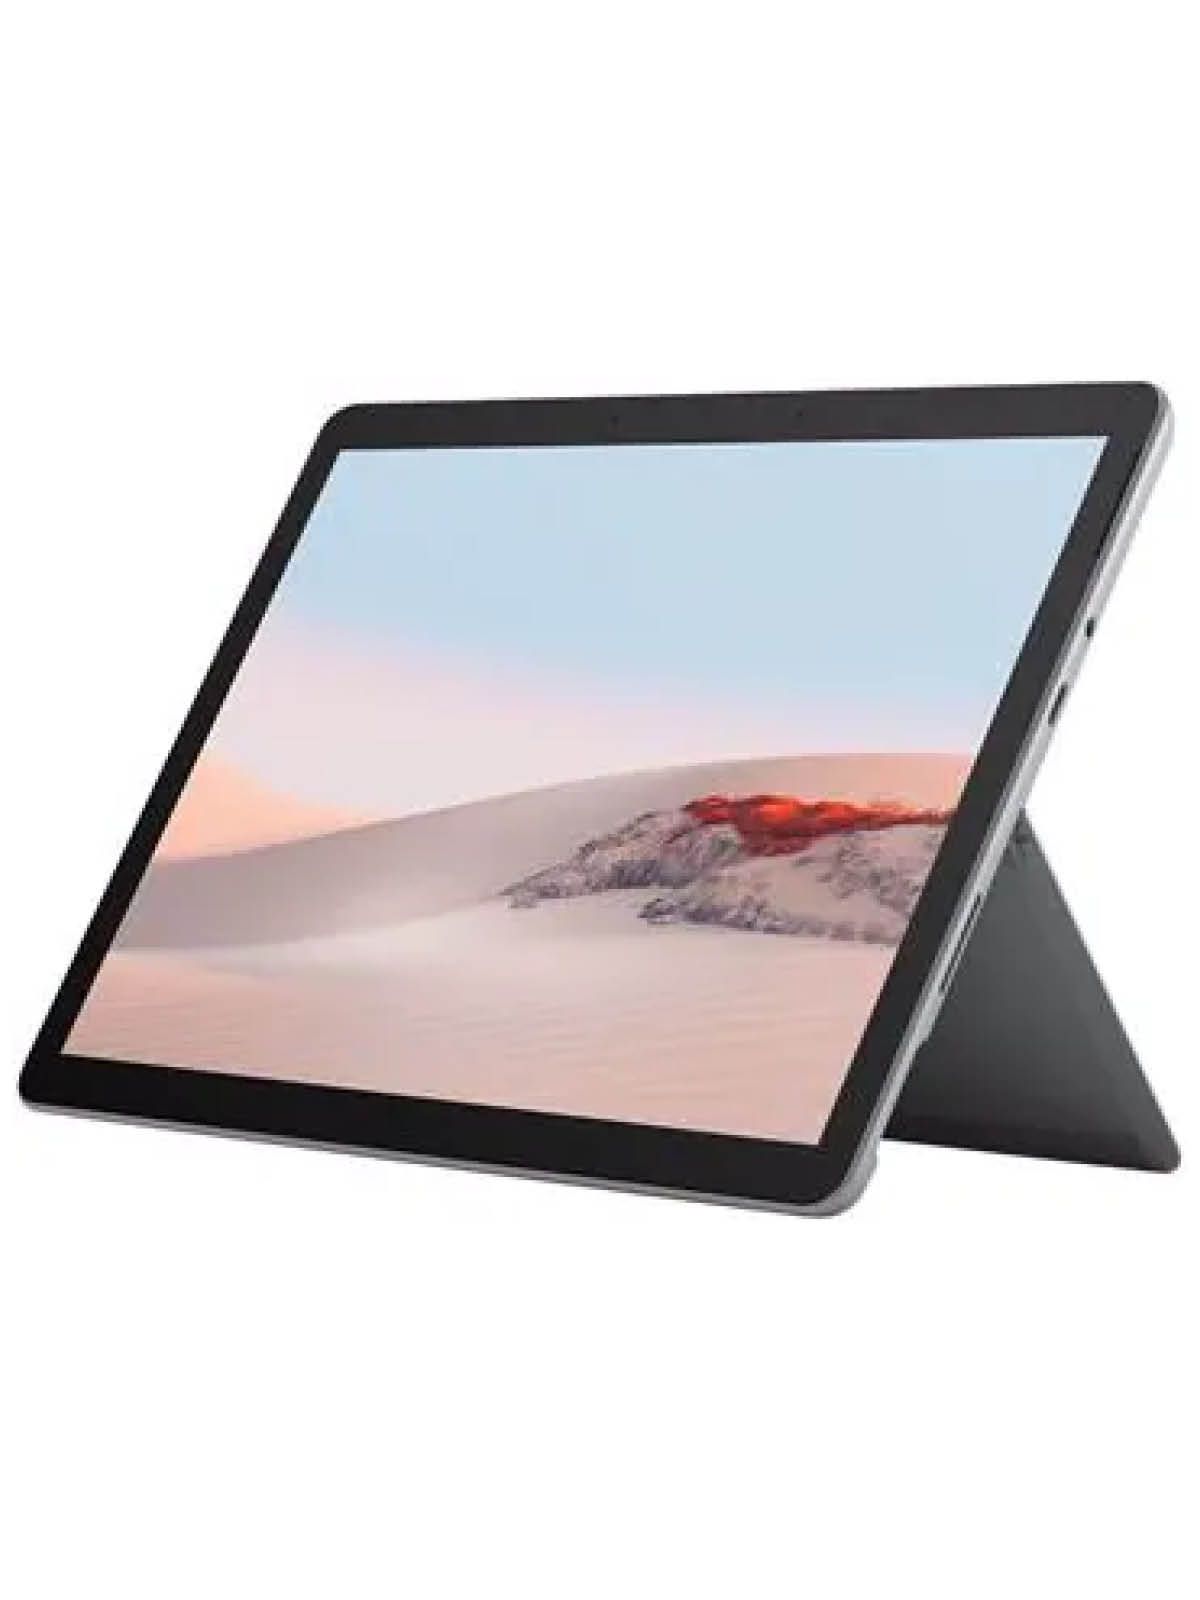 Microsoft Surface Go 2 Gerätehalter